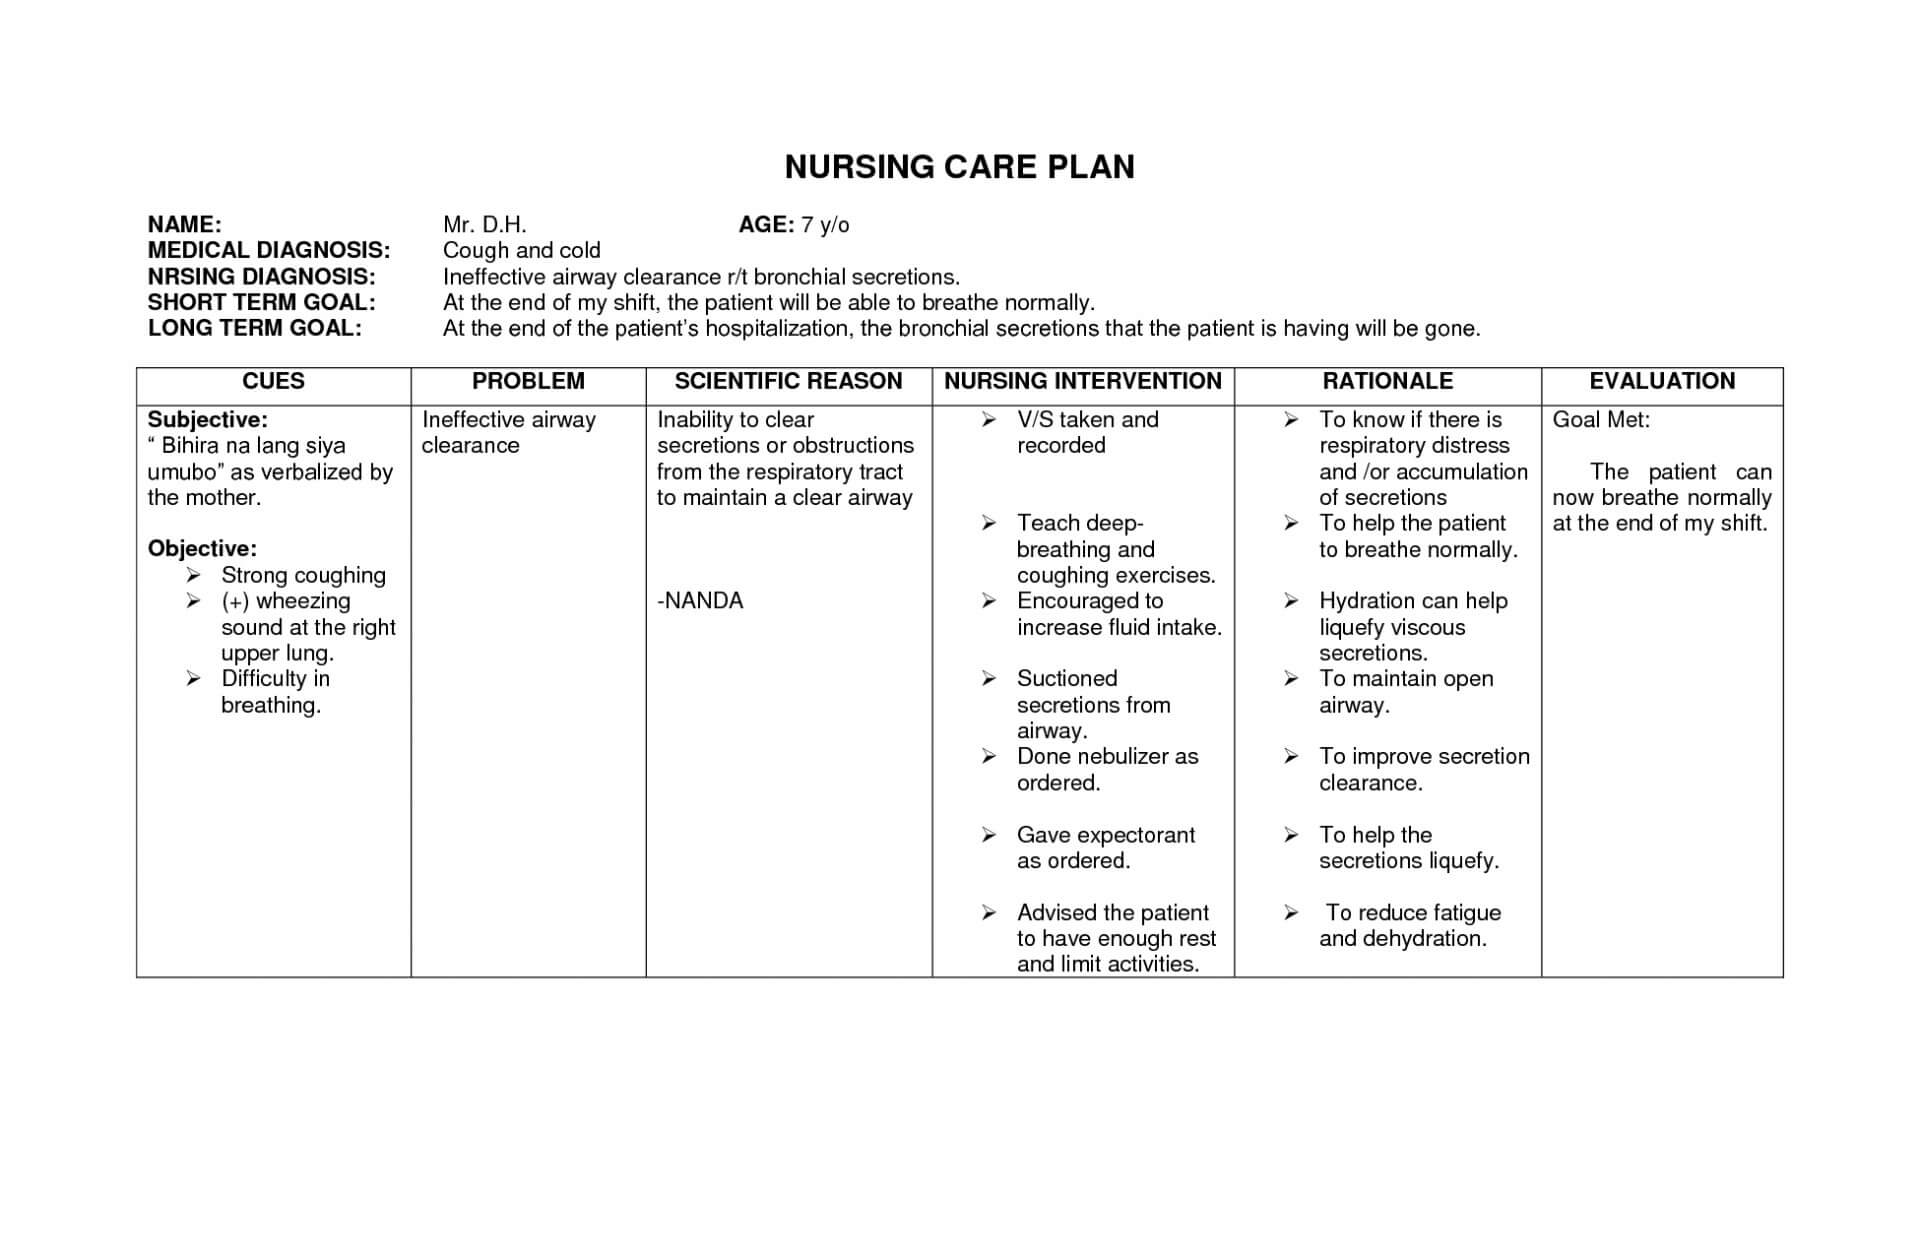 016 Anemia2Bnursing2Bcare2Bplan2B1 Nursing Care Plan Throughout Nursing Care Plan Template Word